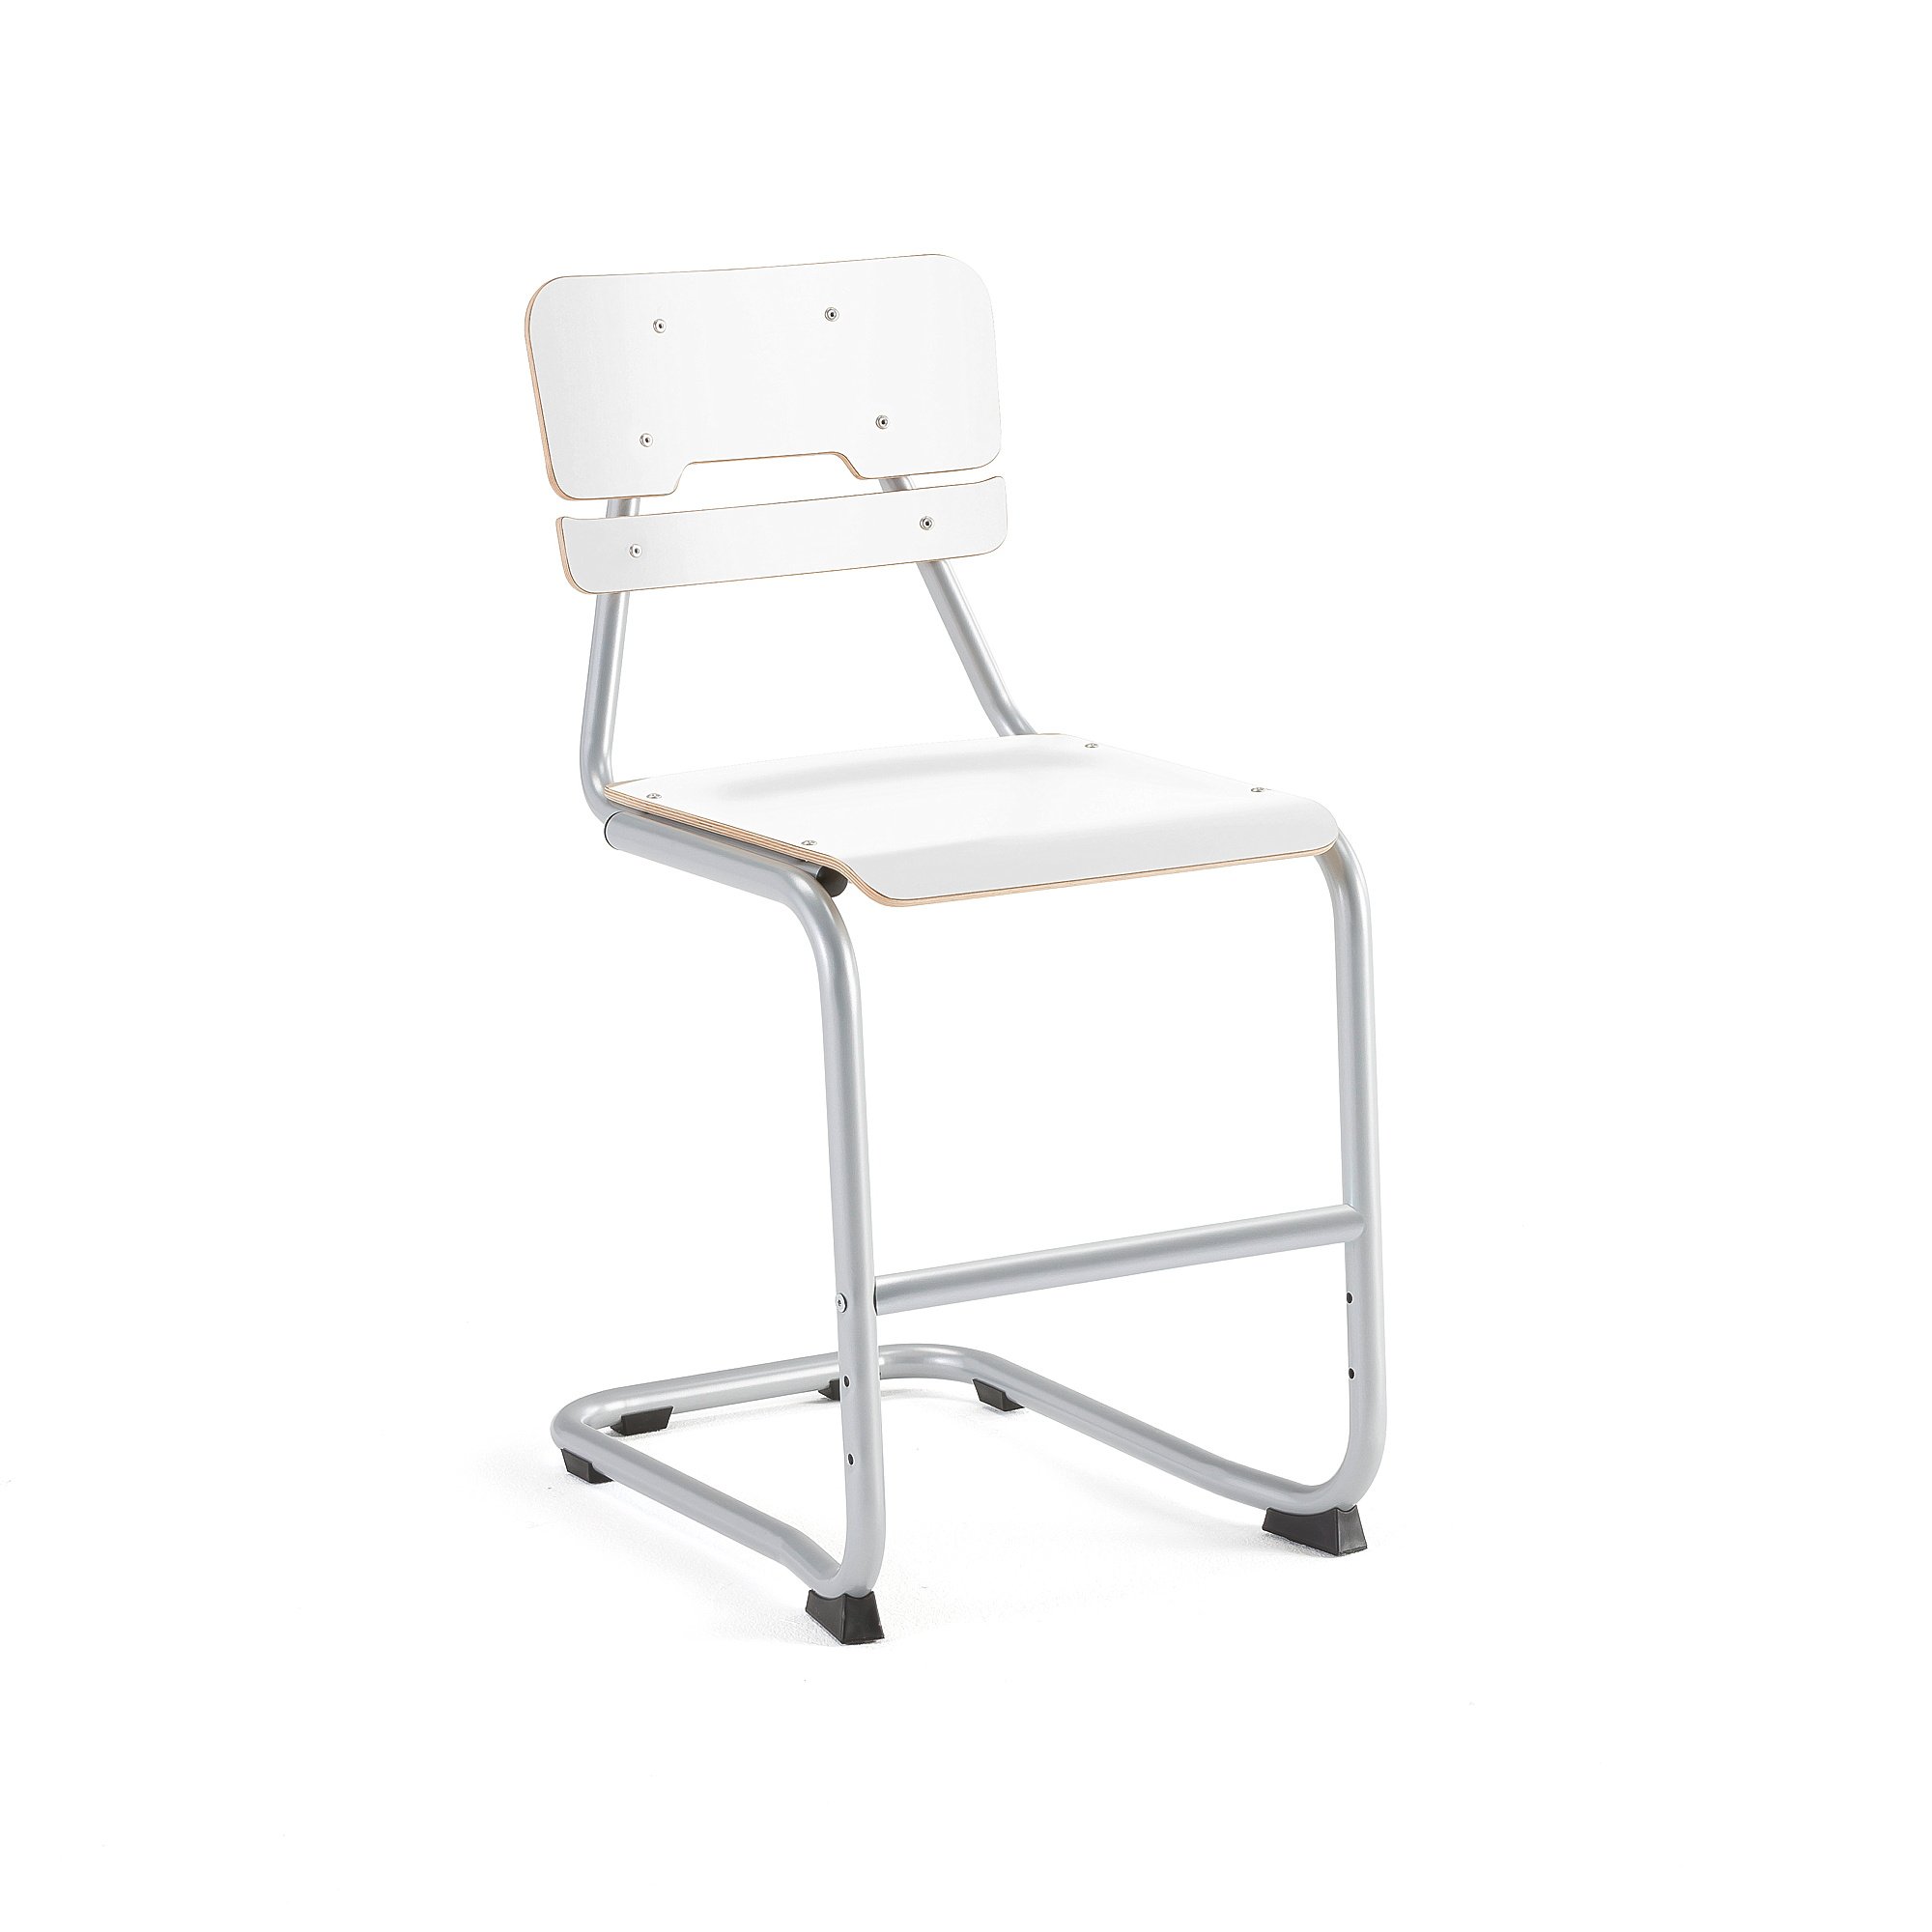 Školní židle LEGERE I, výška 500 mm, bílá